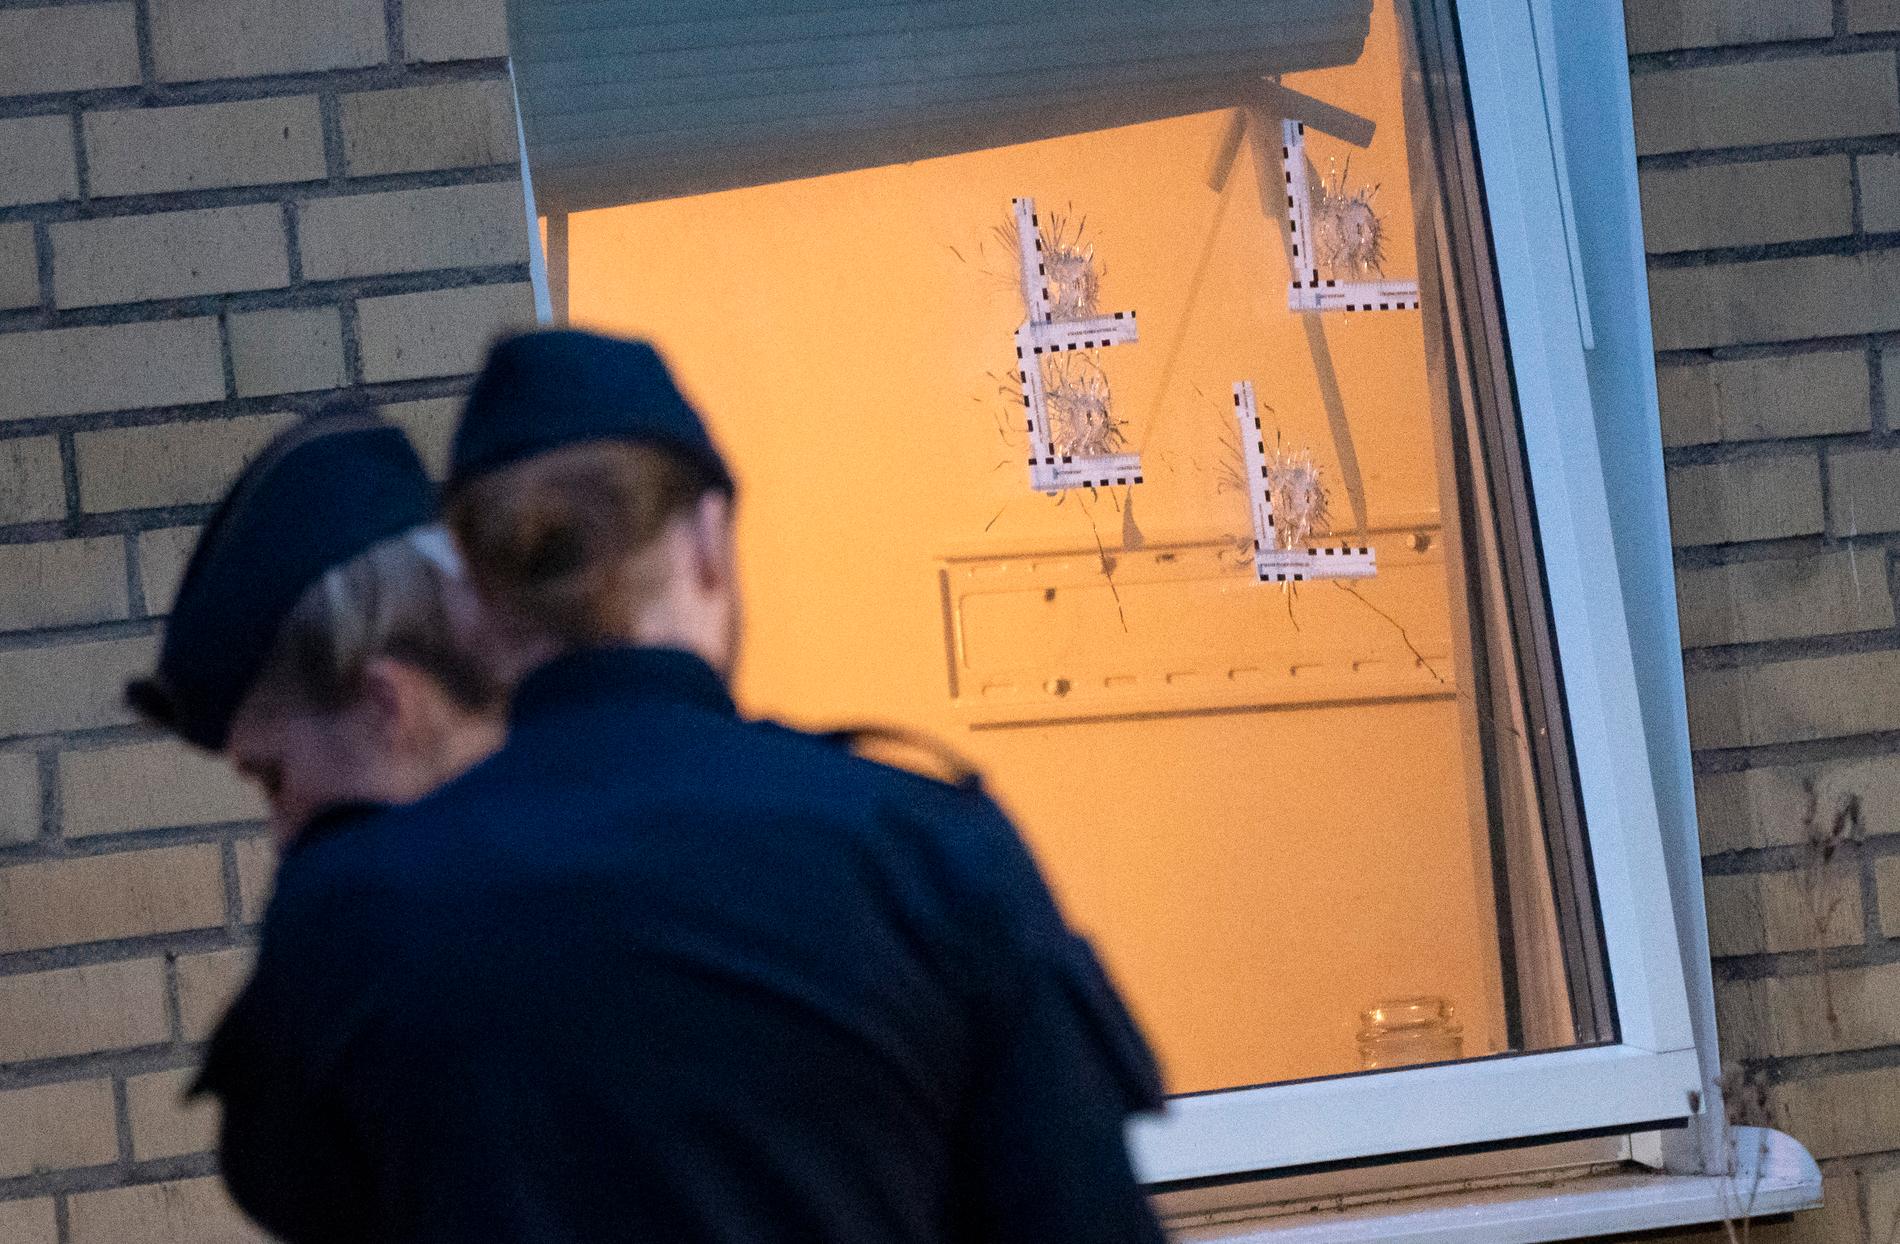 Polis och avspärrningar i stadsdelen Fosie i Malmö efter att en lägenhet beskjutits med flera skott tidigt på fredagsmorgonen.